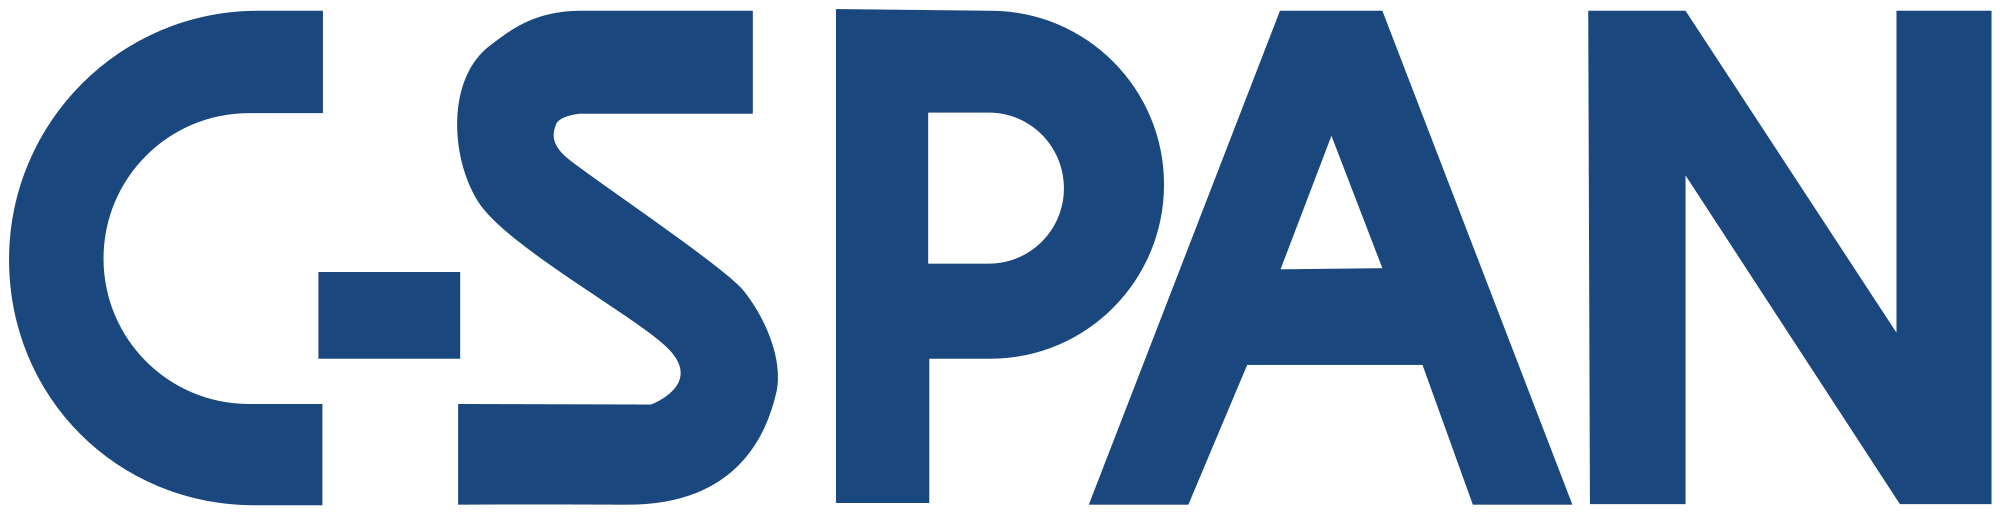 H1 span. C-span. Логотип. Ц лого. Span logo.